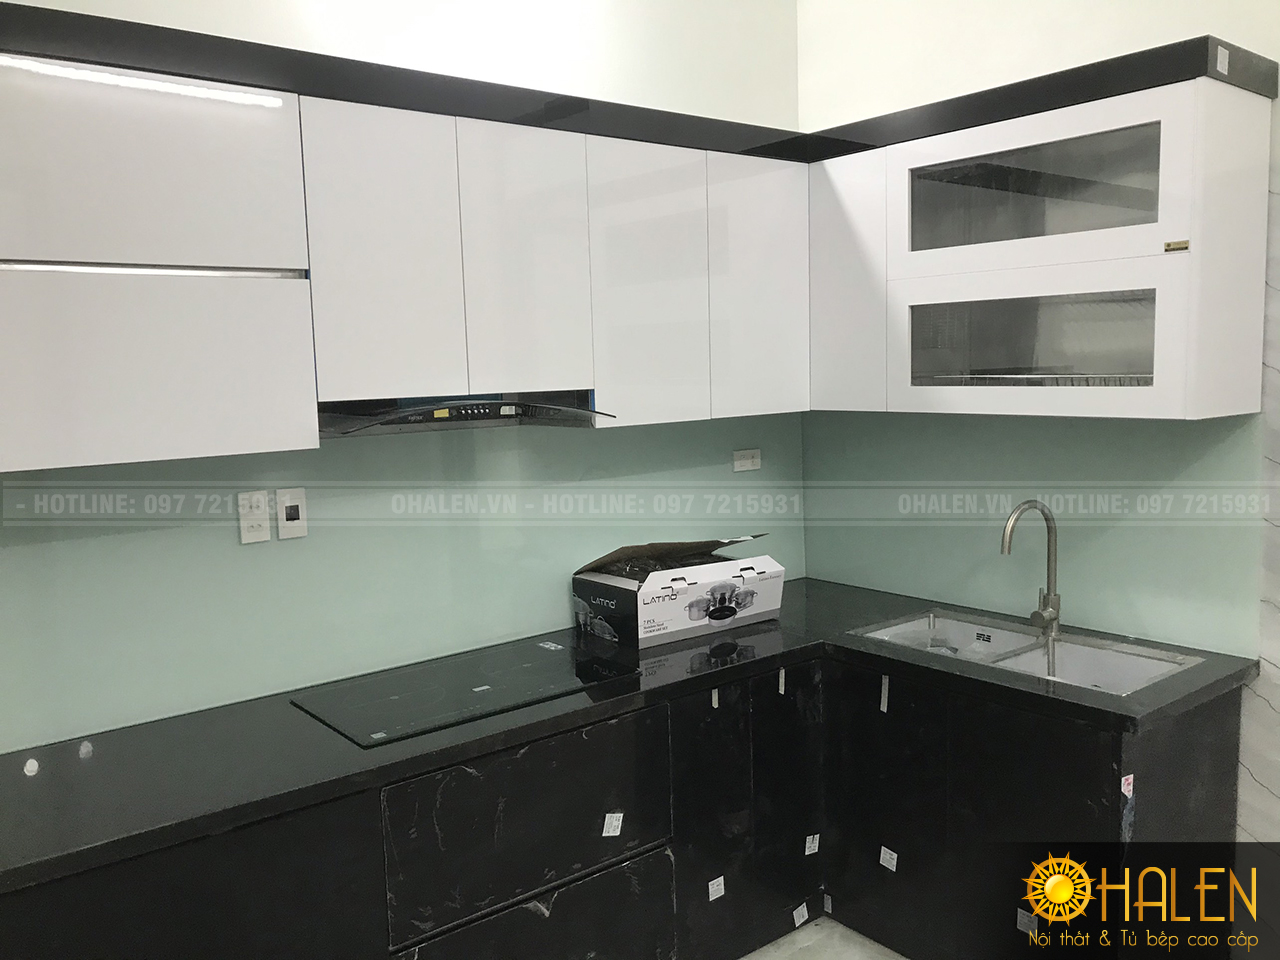 Hoàn thiện bộ tủ bếp với tông màu đen trắng - kính ốp bếp trắng xanh